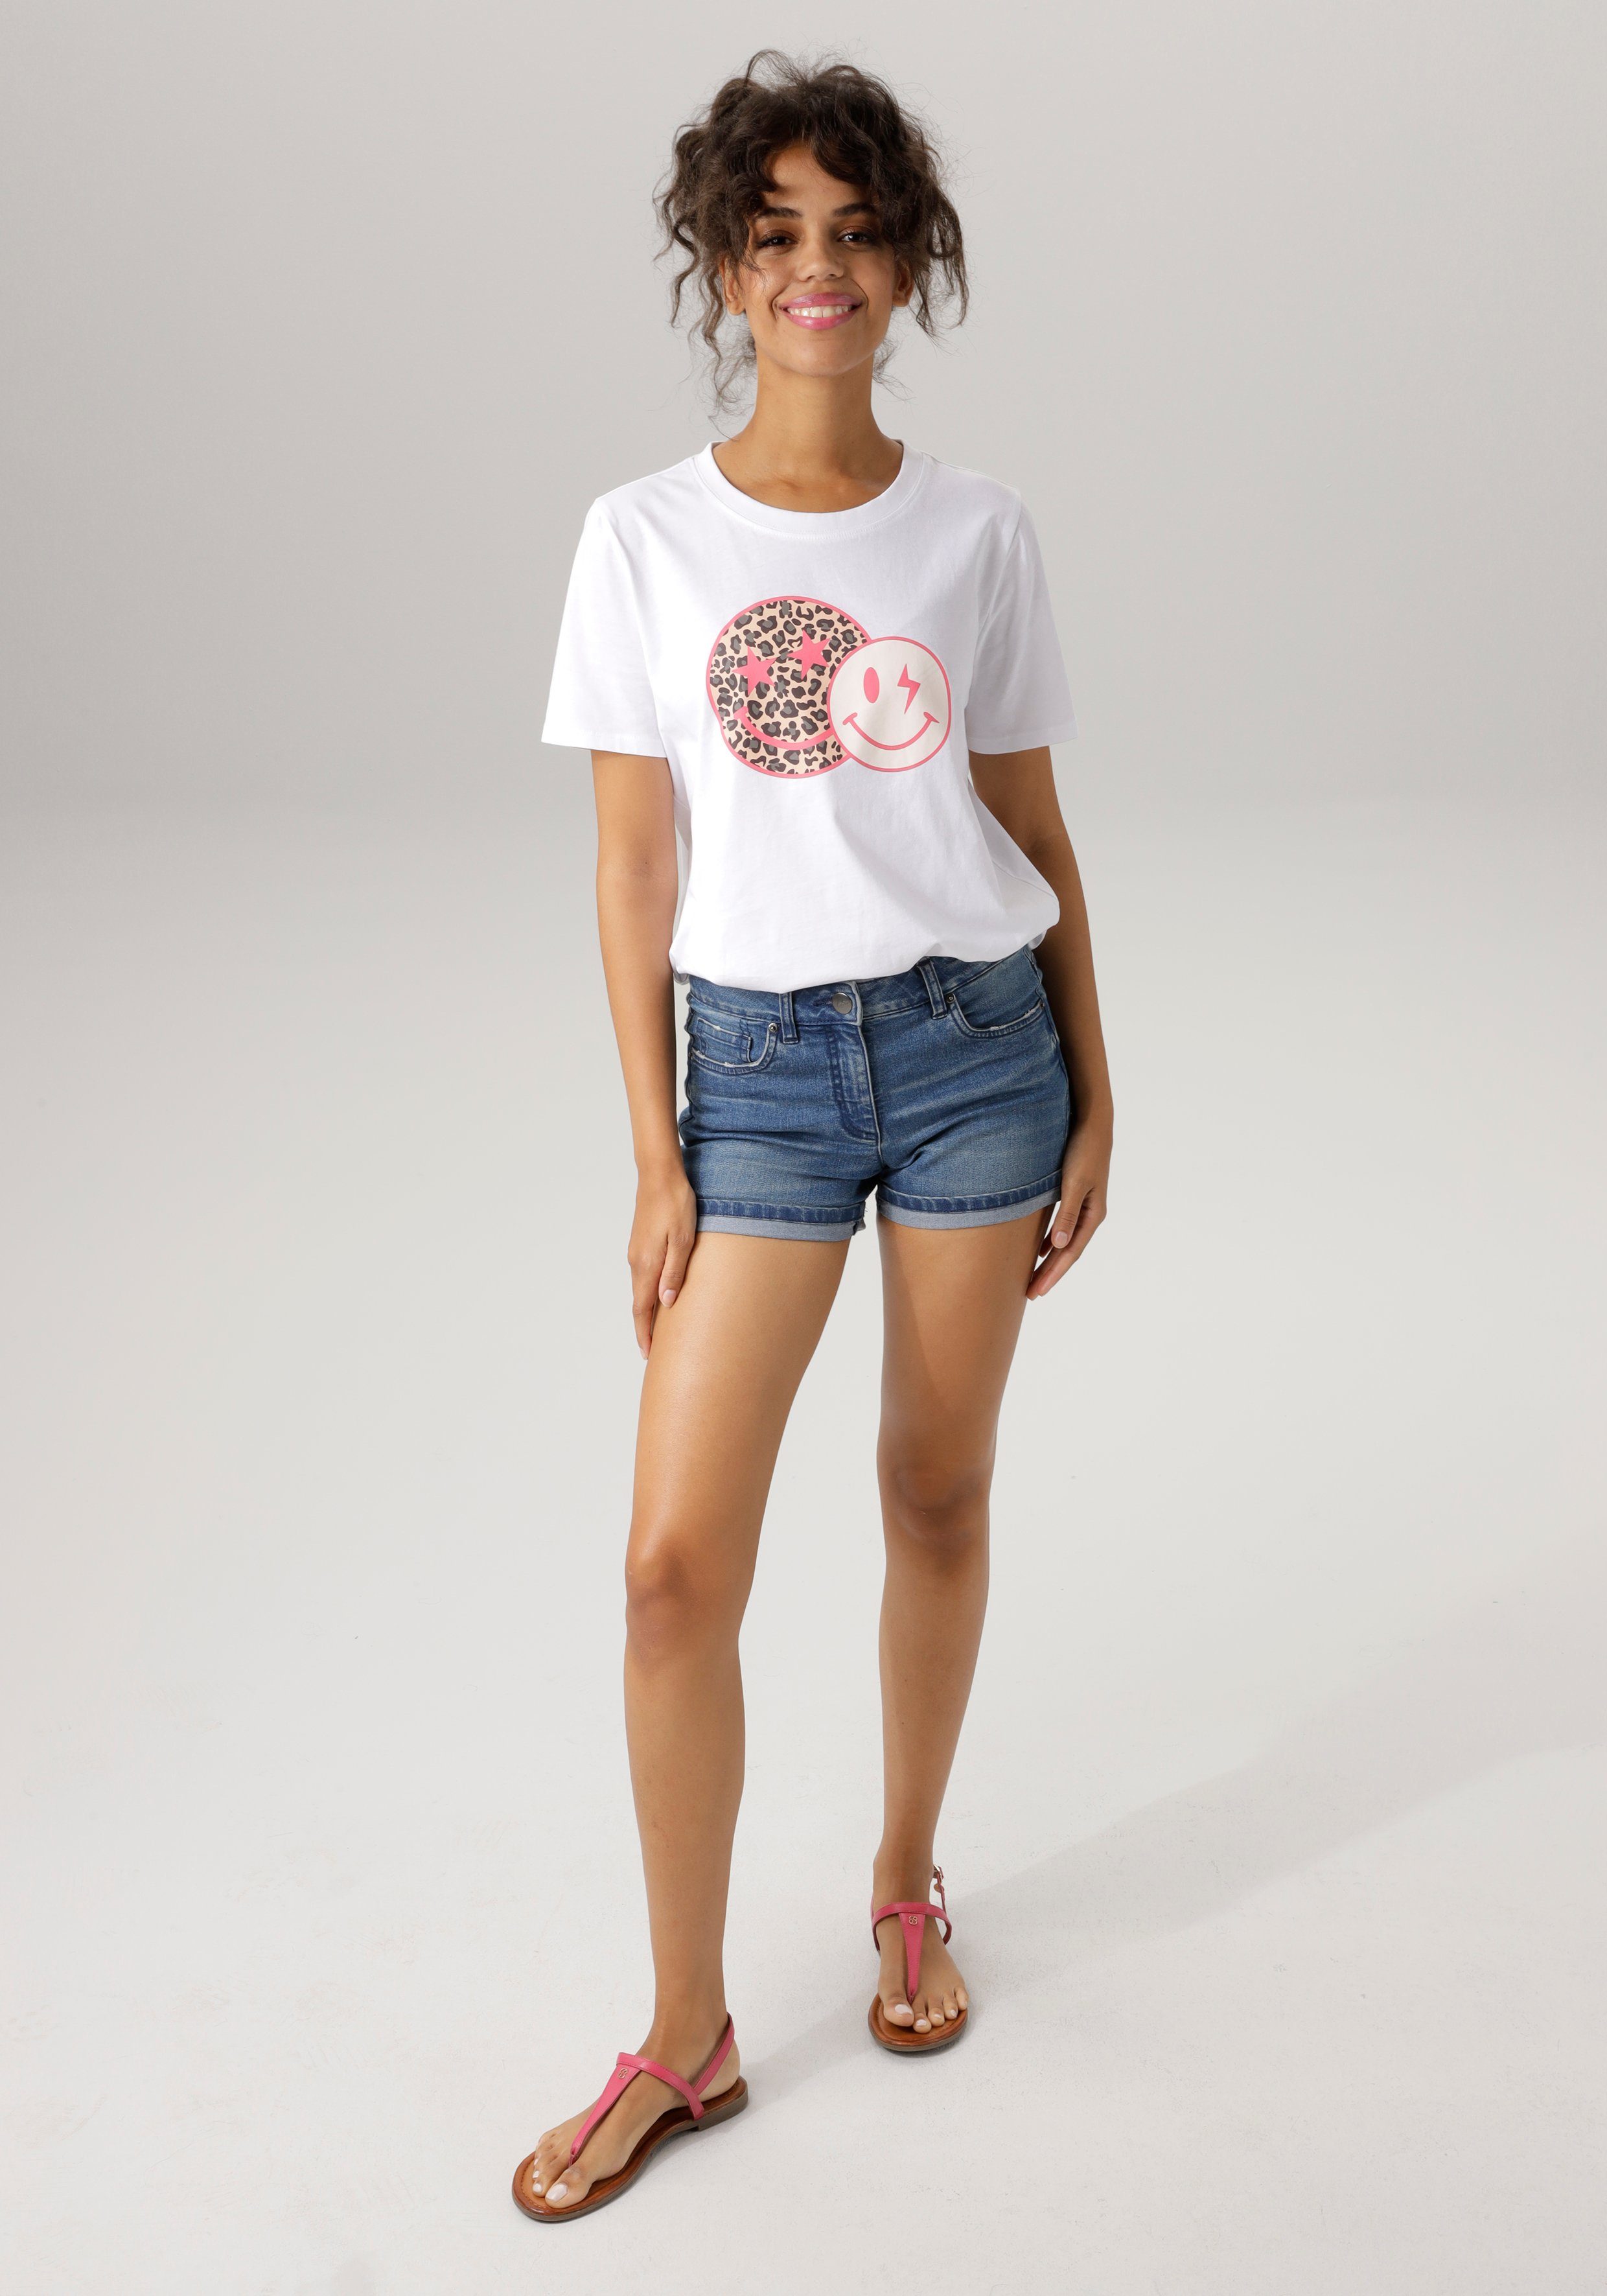 CASUAL Smileys Aniston coolen weiß-pink-beige-schwarz-grau bedruckt T-Shirt mit